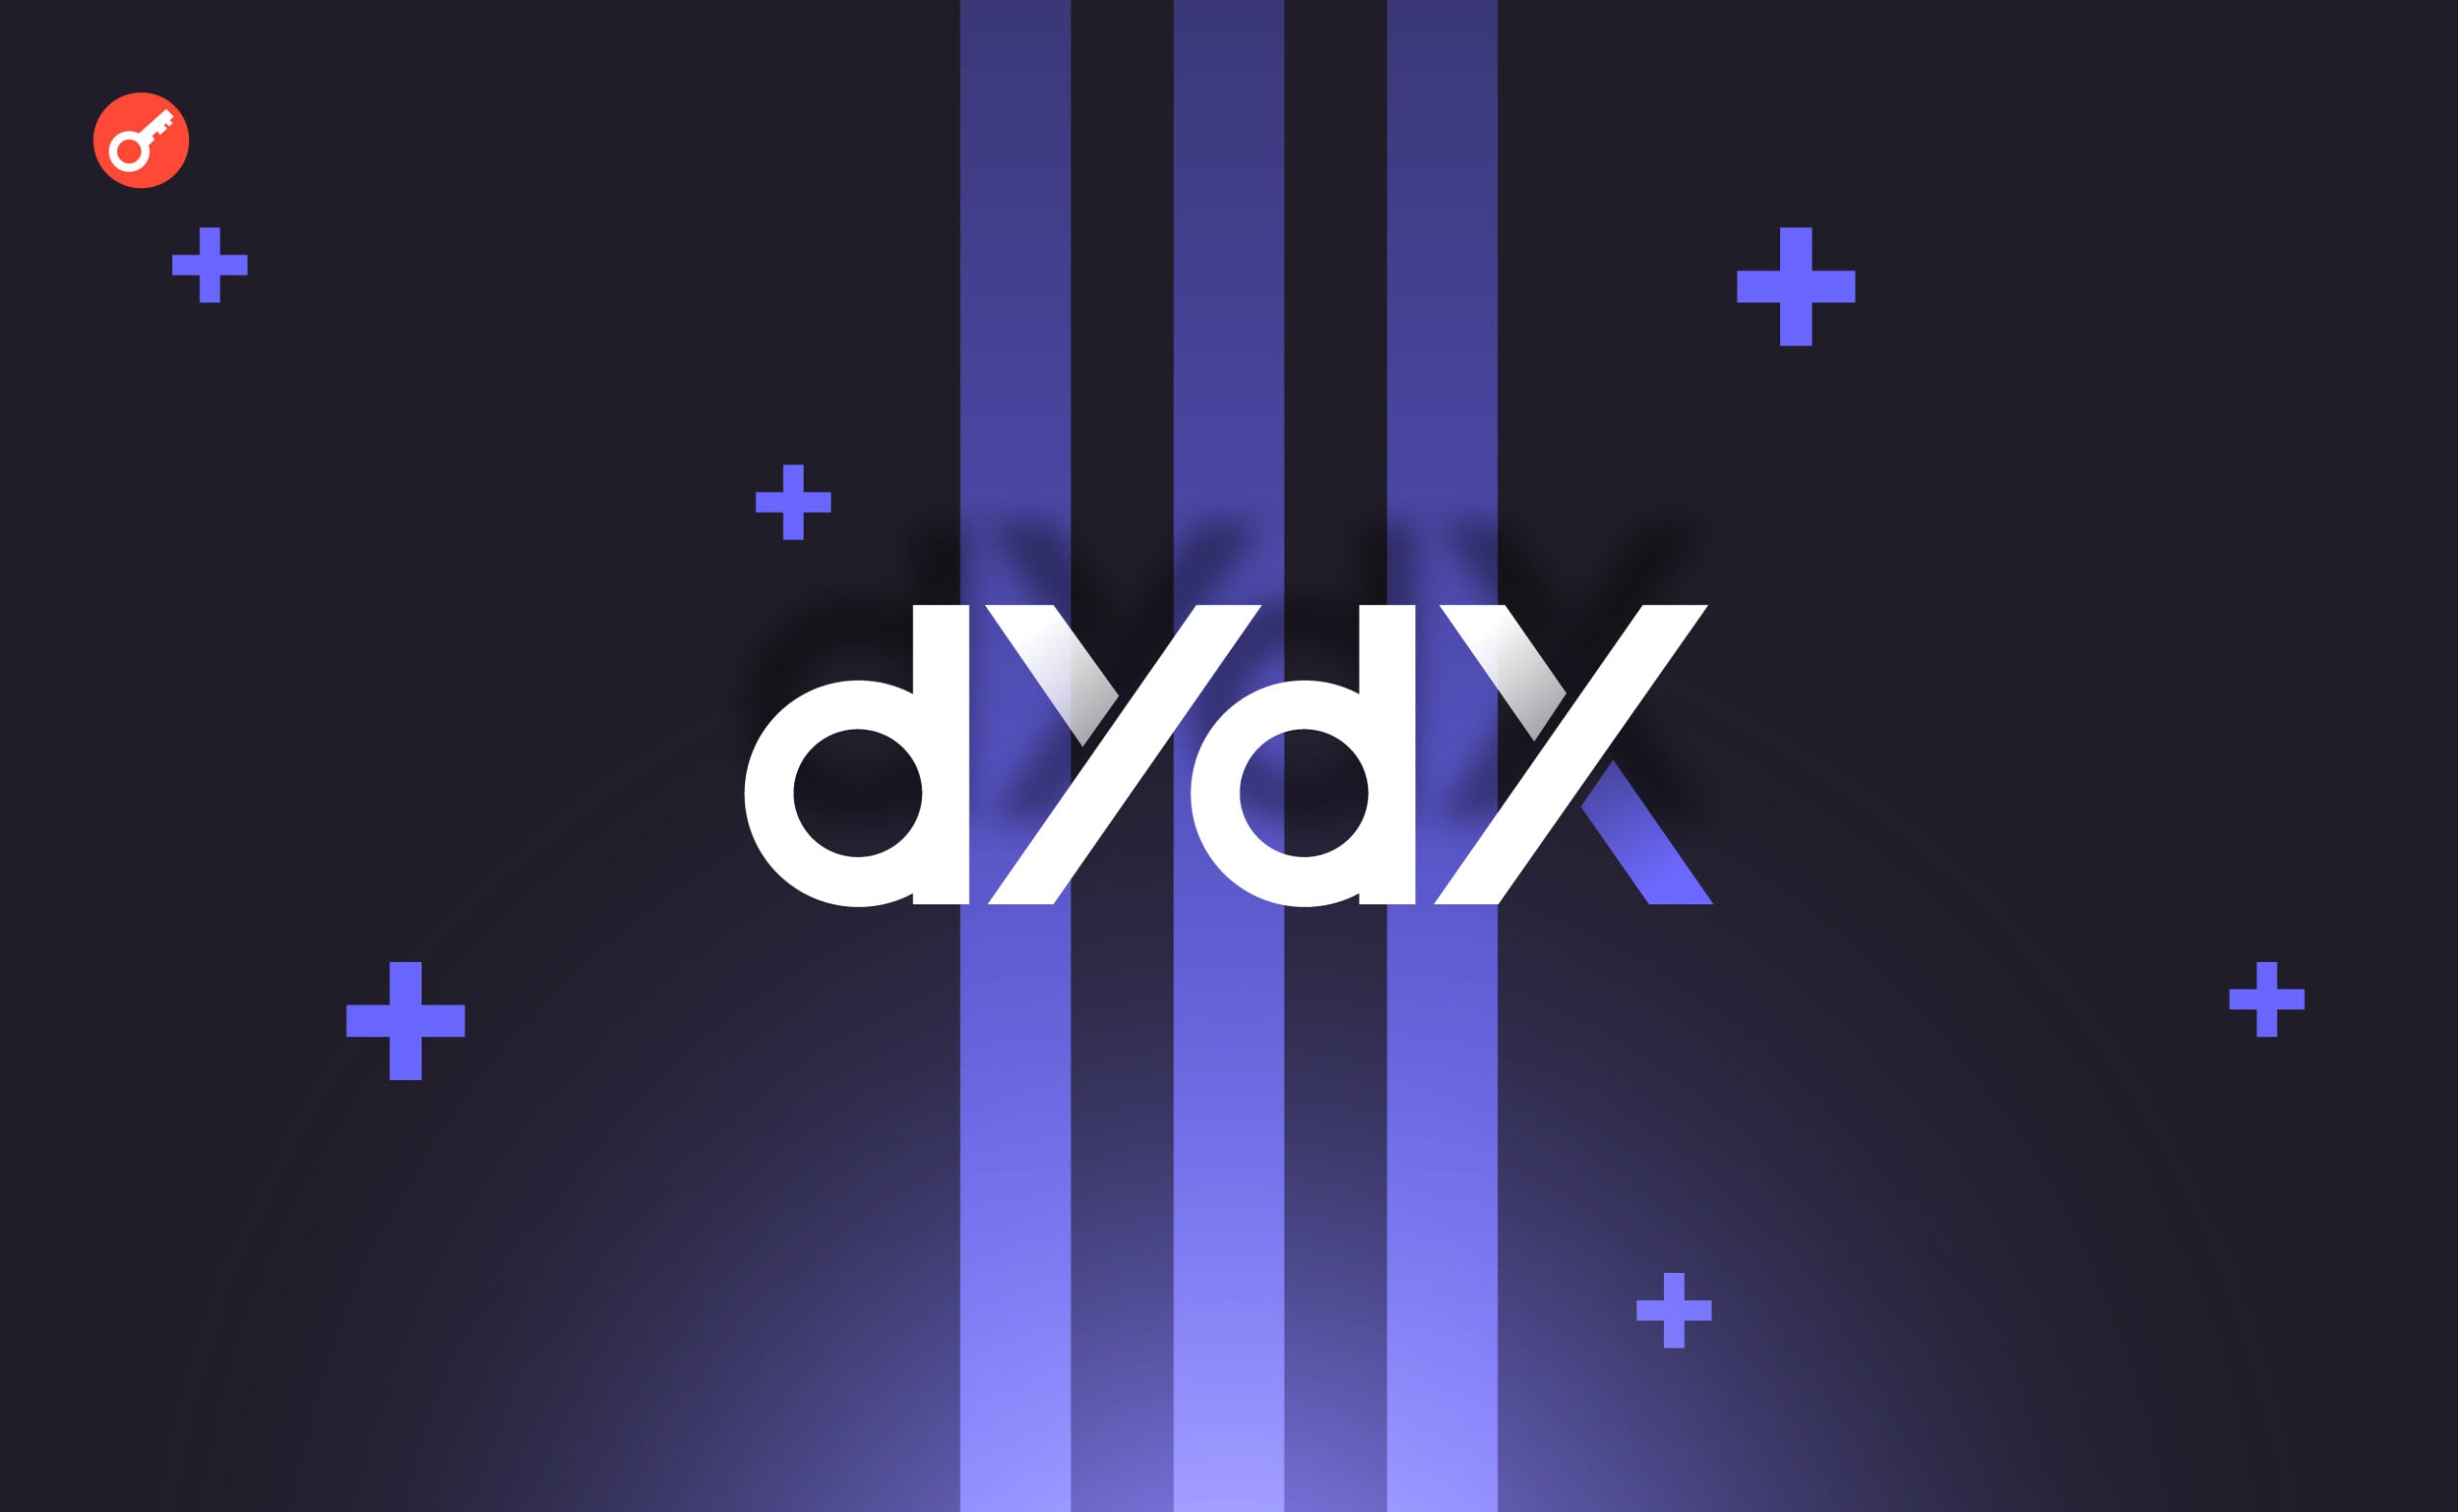 Сообщество одобрило миграцию токена управления в сеть dYdX. Заглавный коллаж новости.